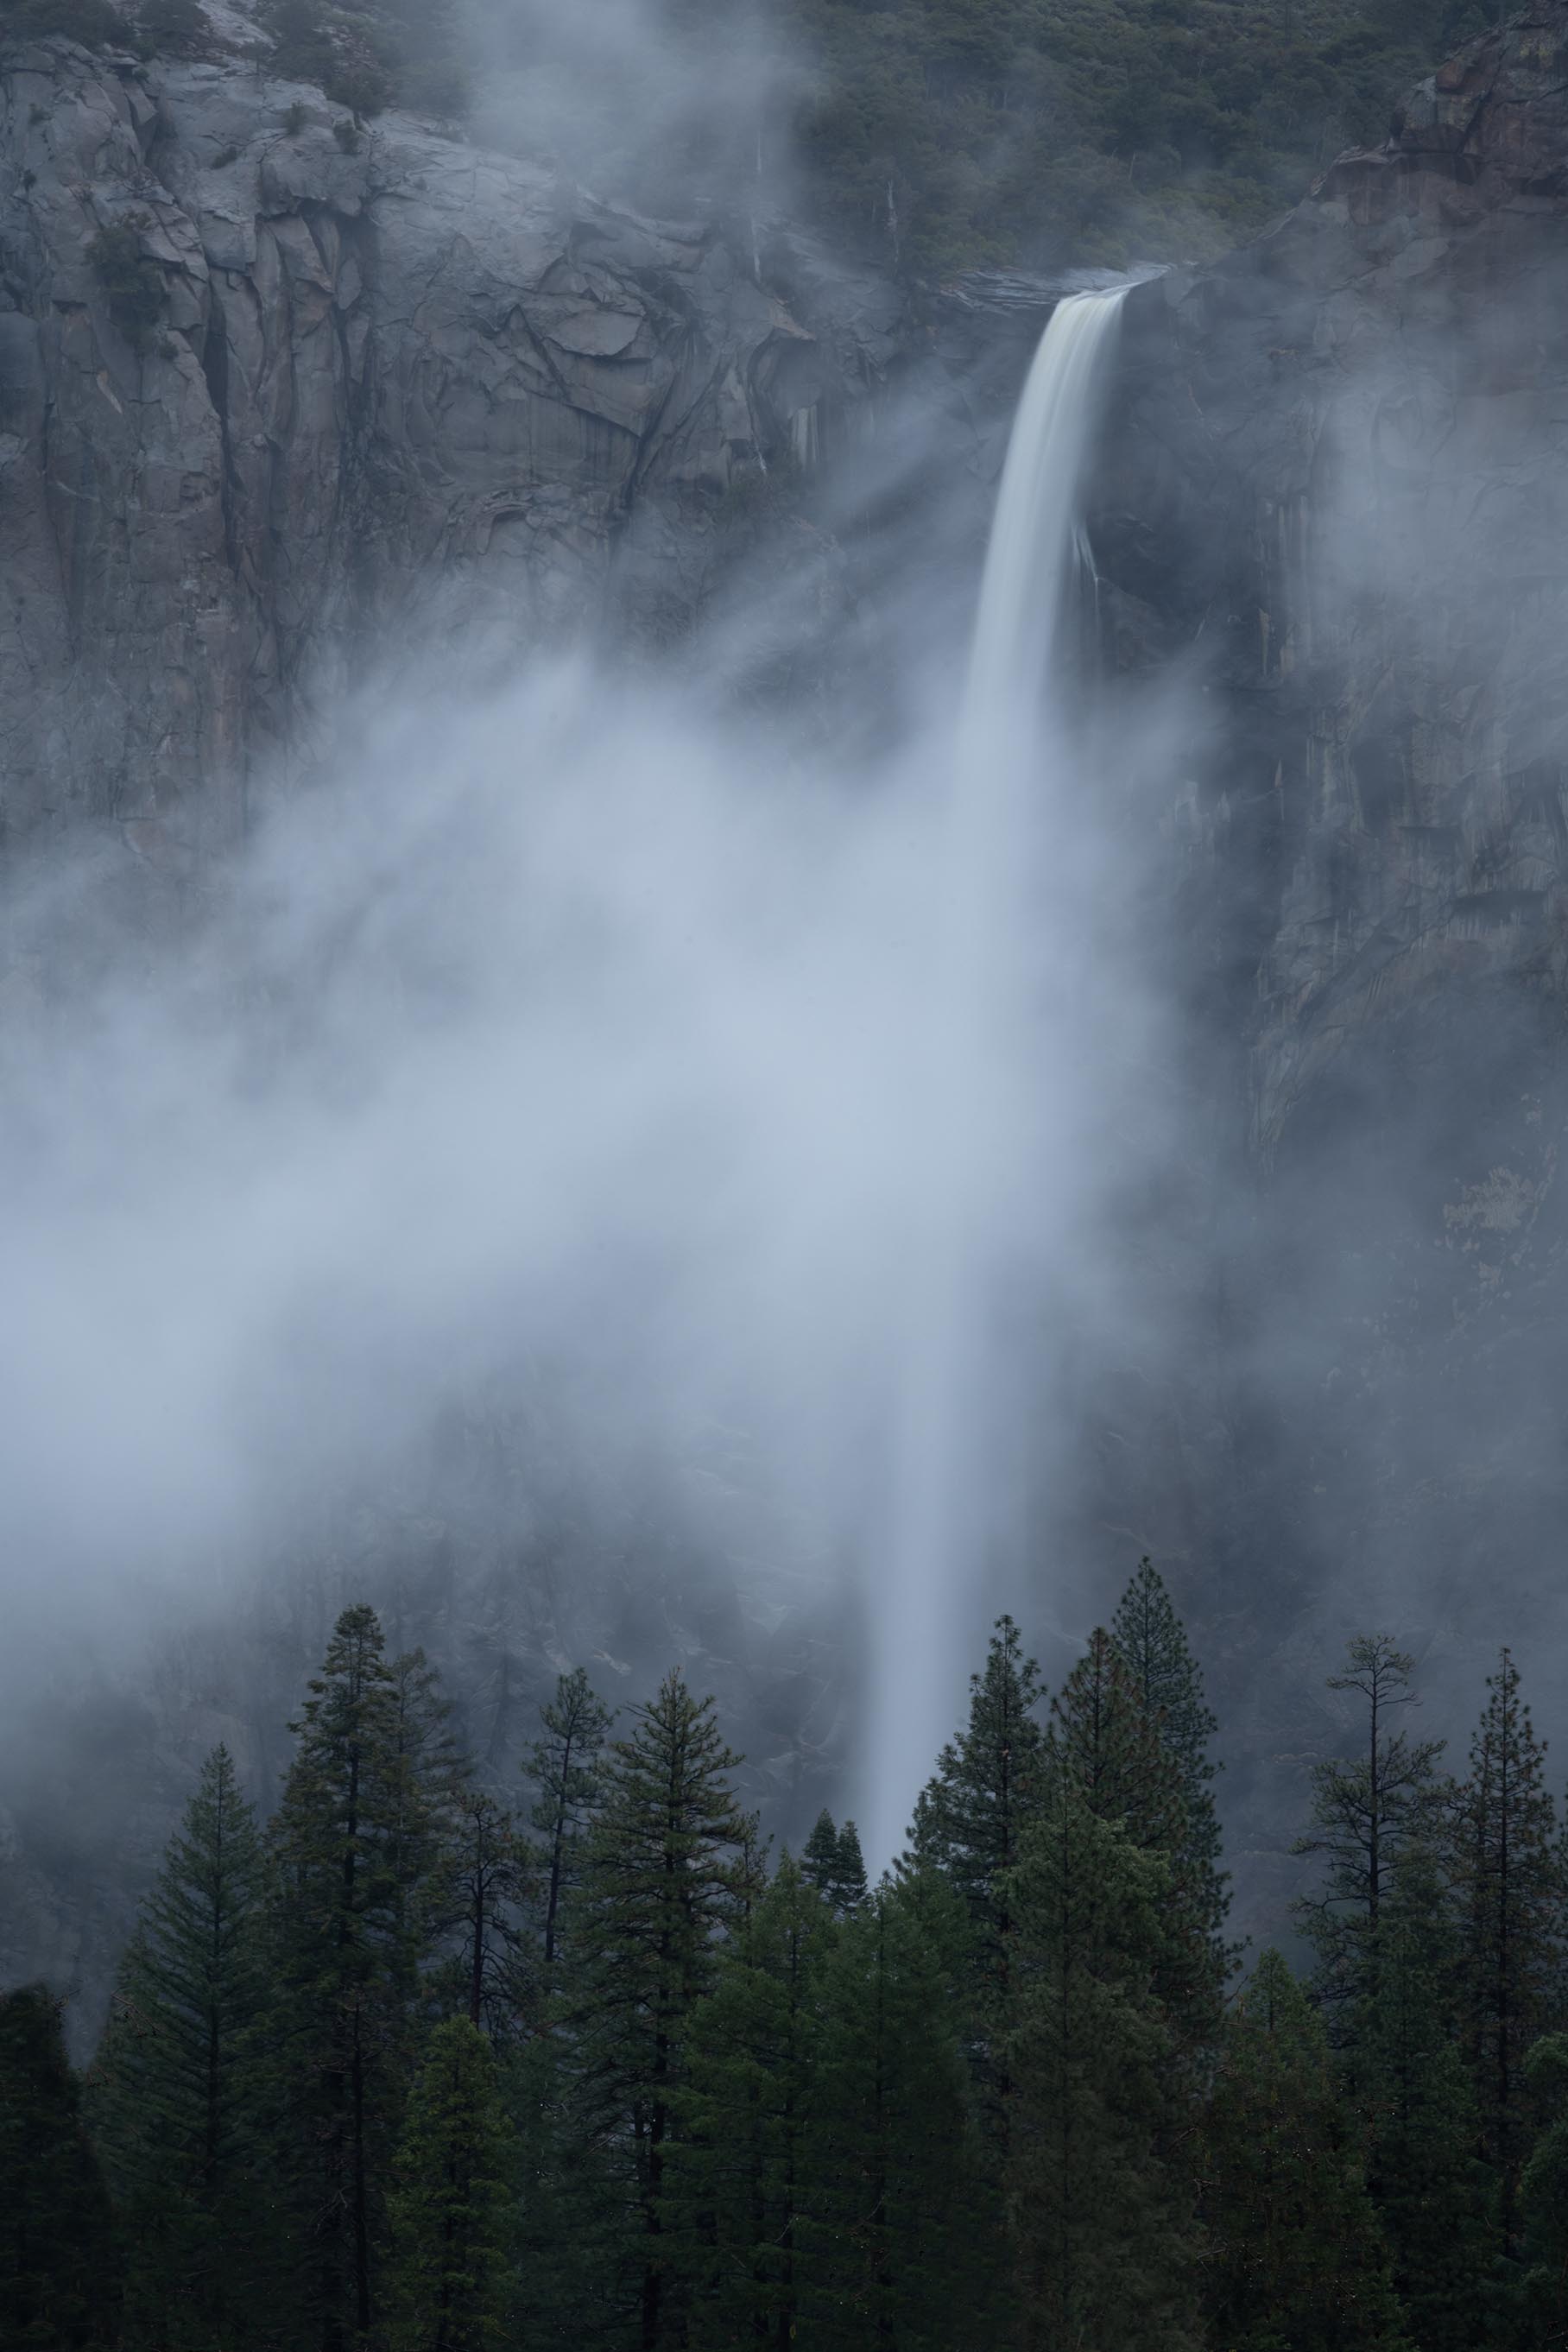 Winter at Yosemite by John Zhu